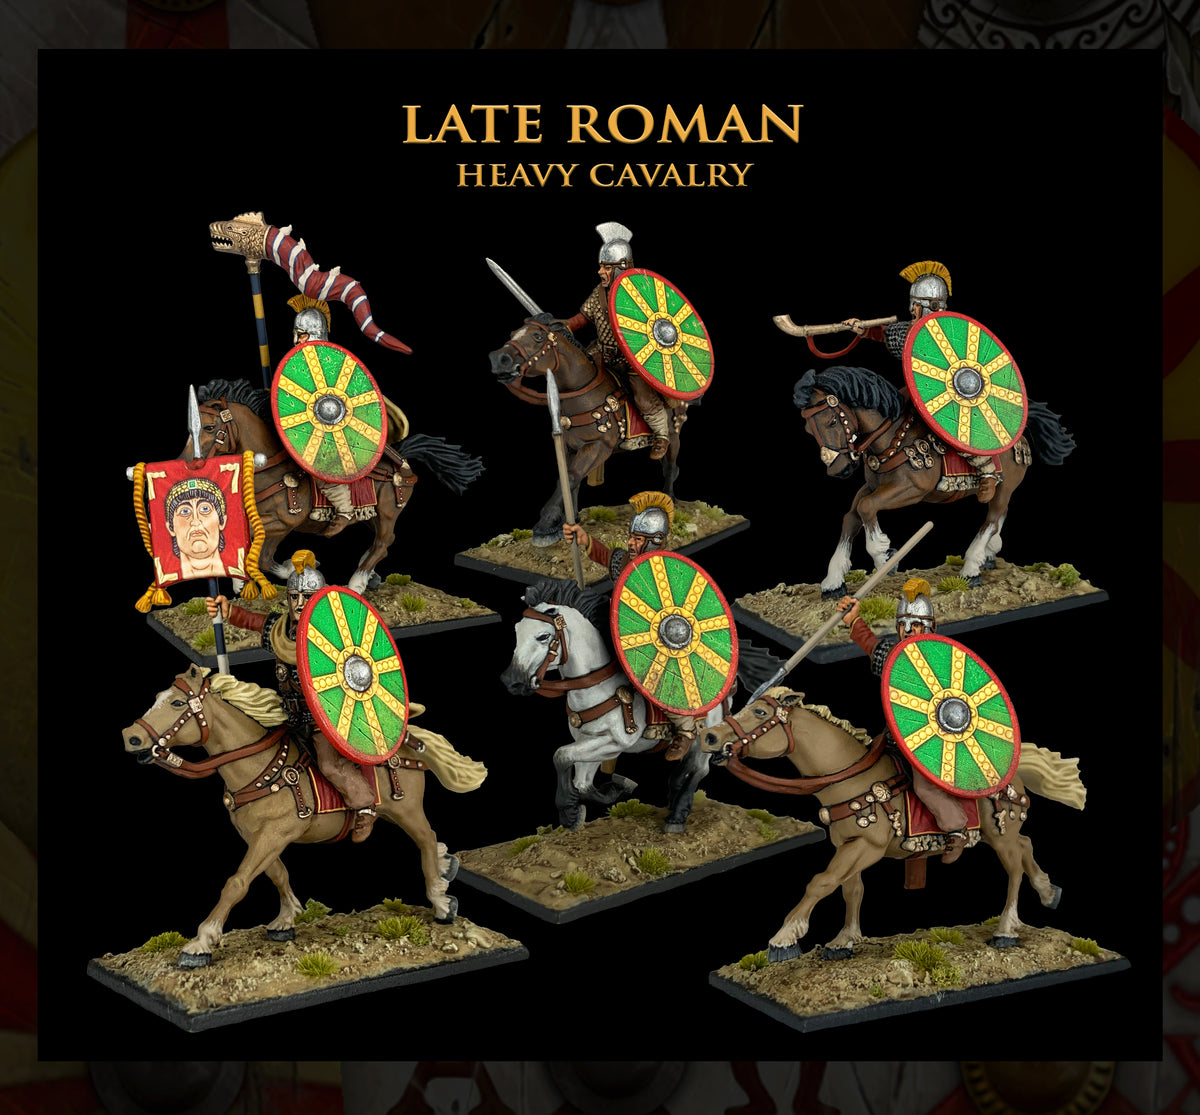 Caballería blindada romana tardía